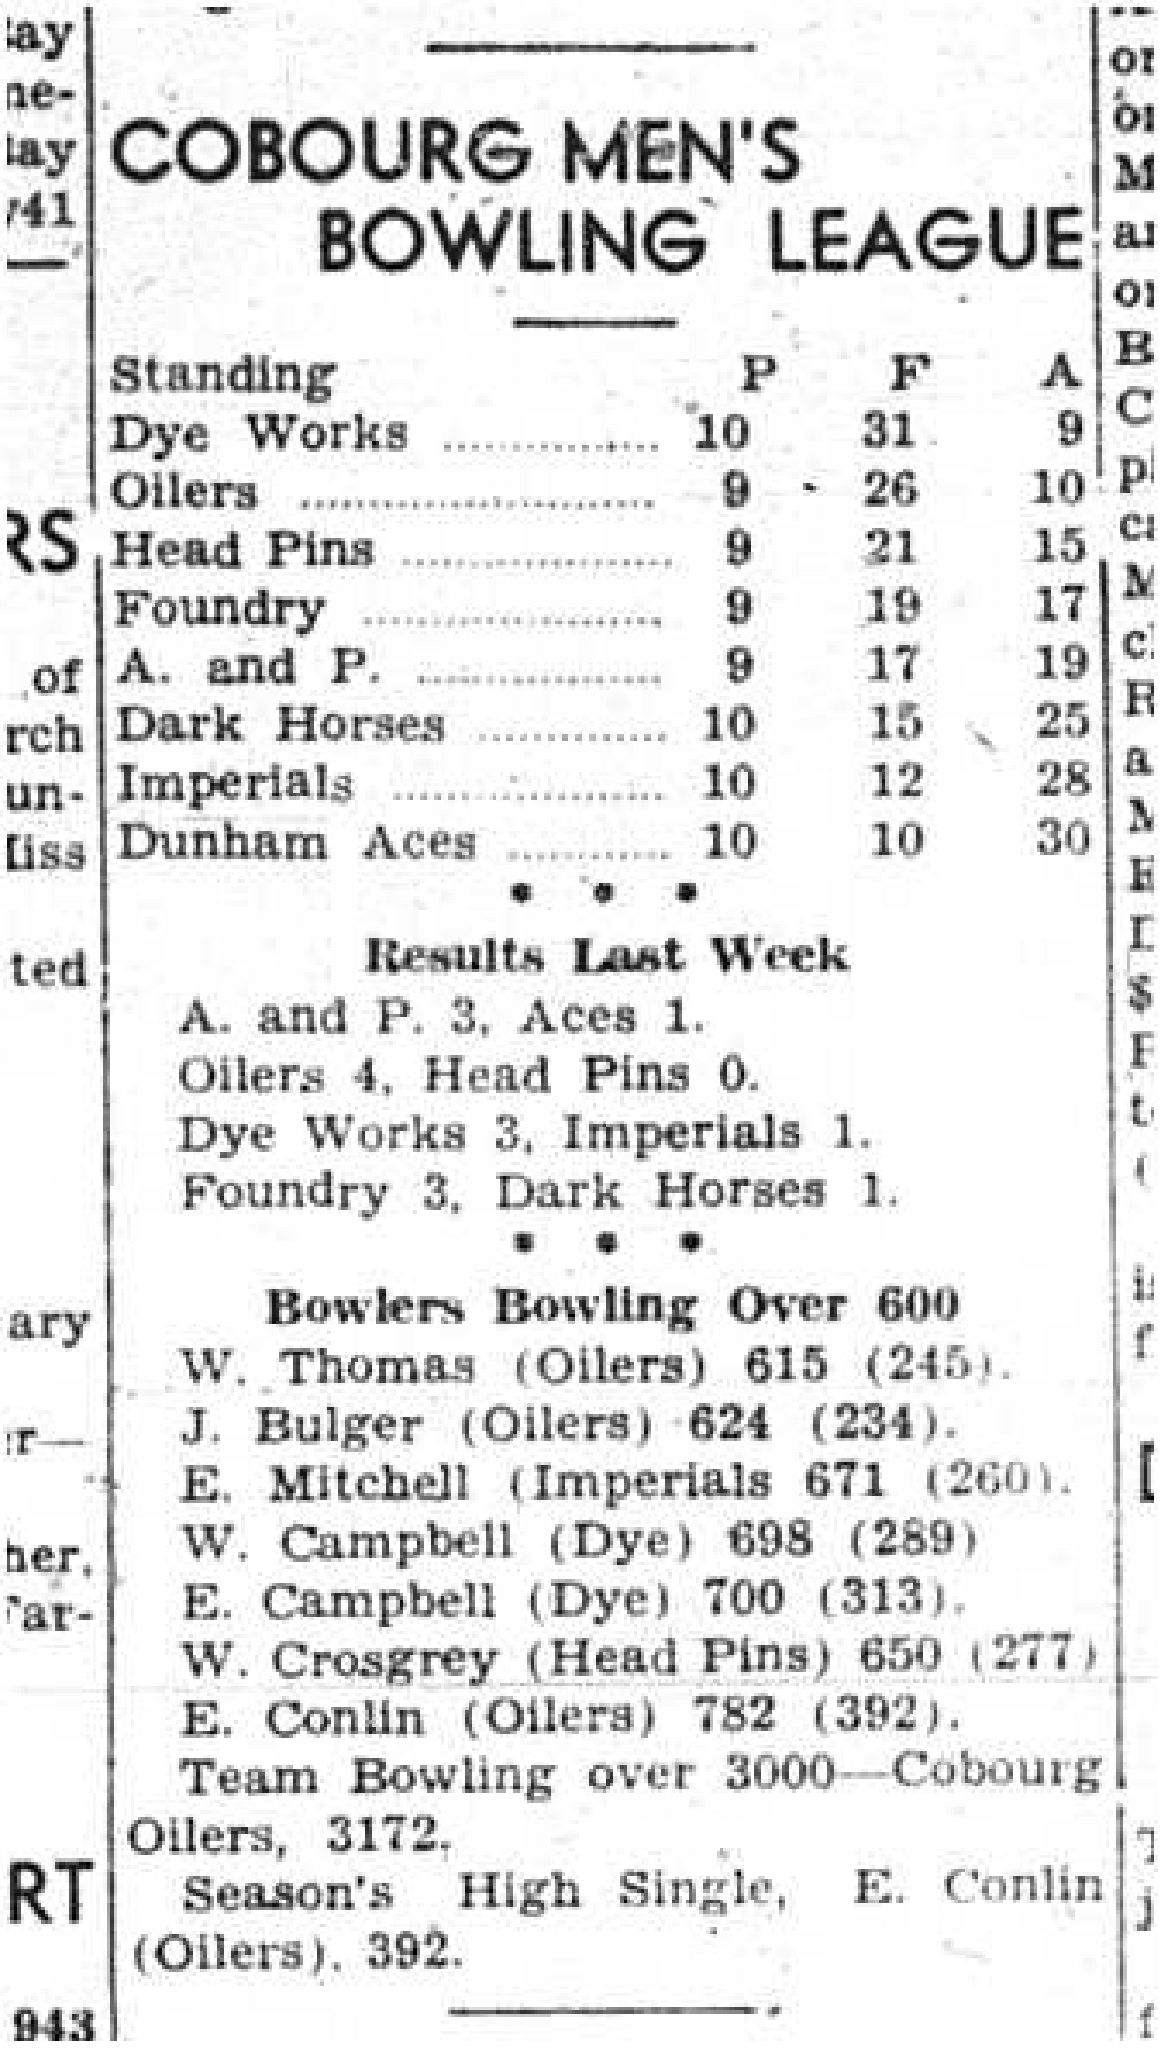 1943-01-14 Bowling - Men